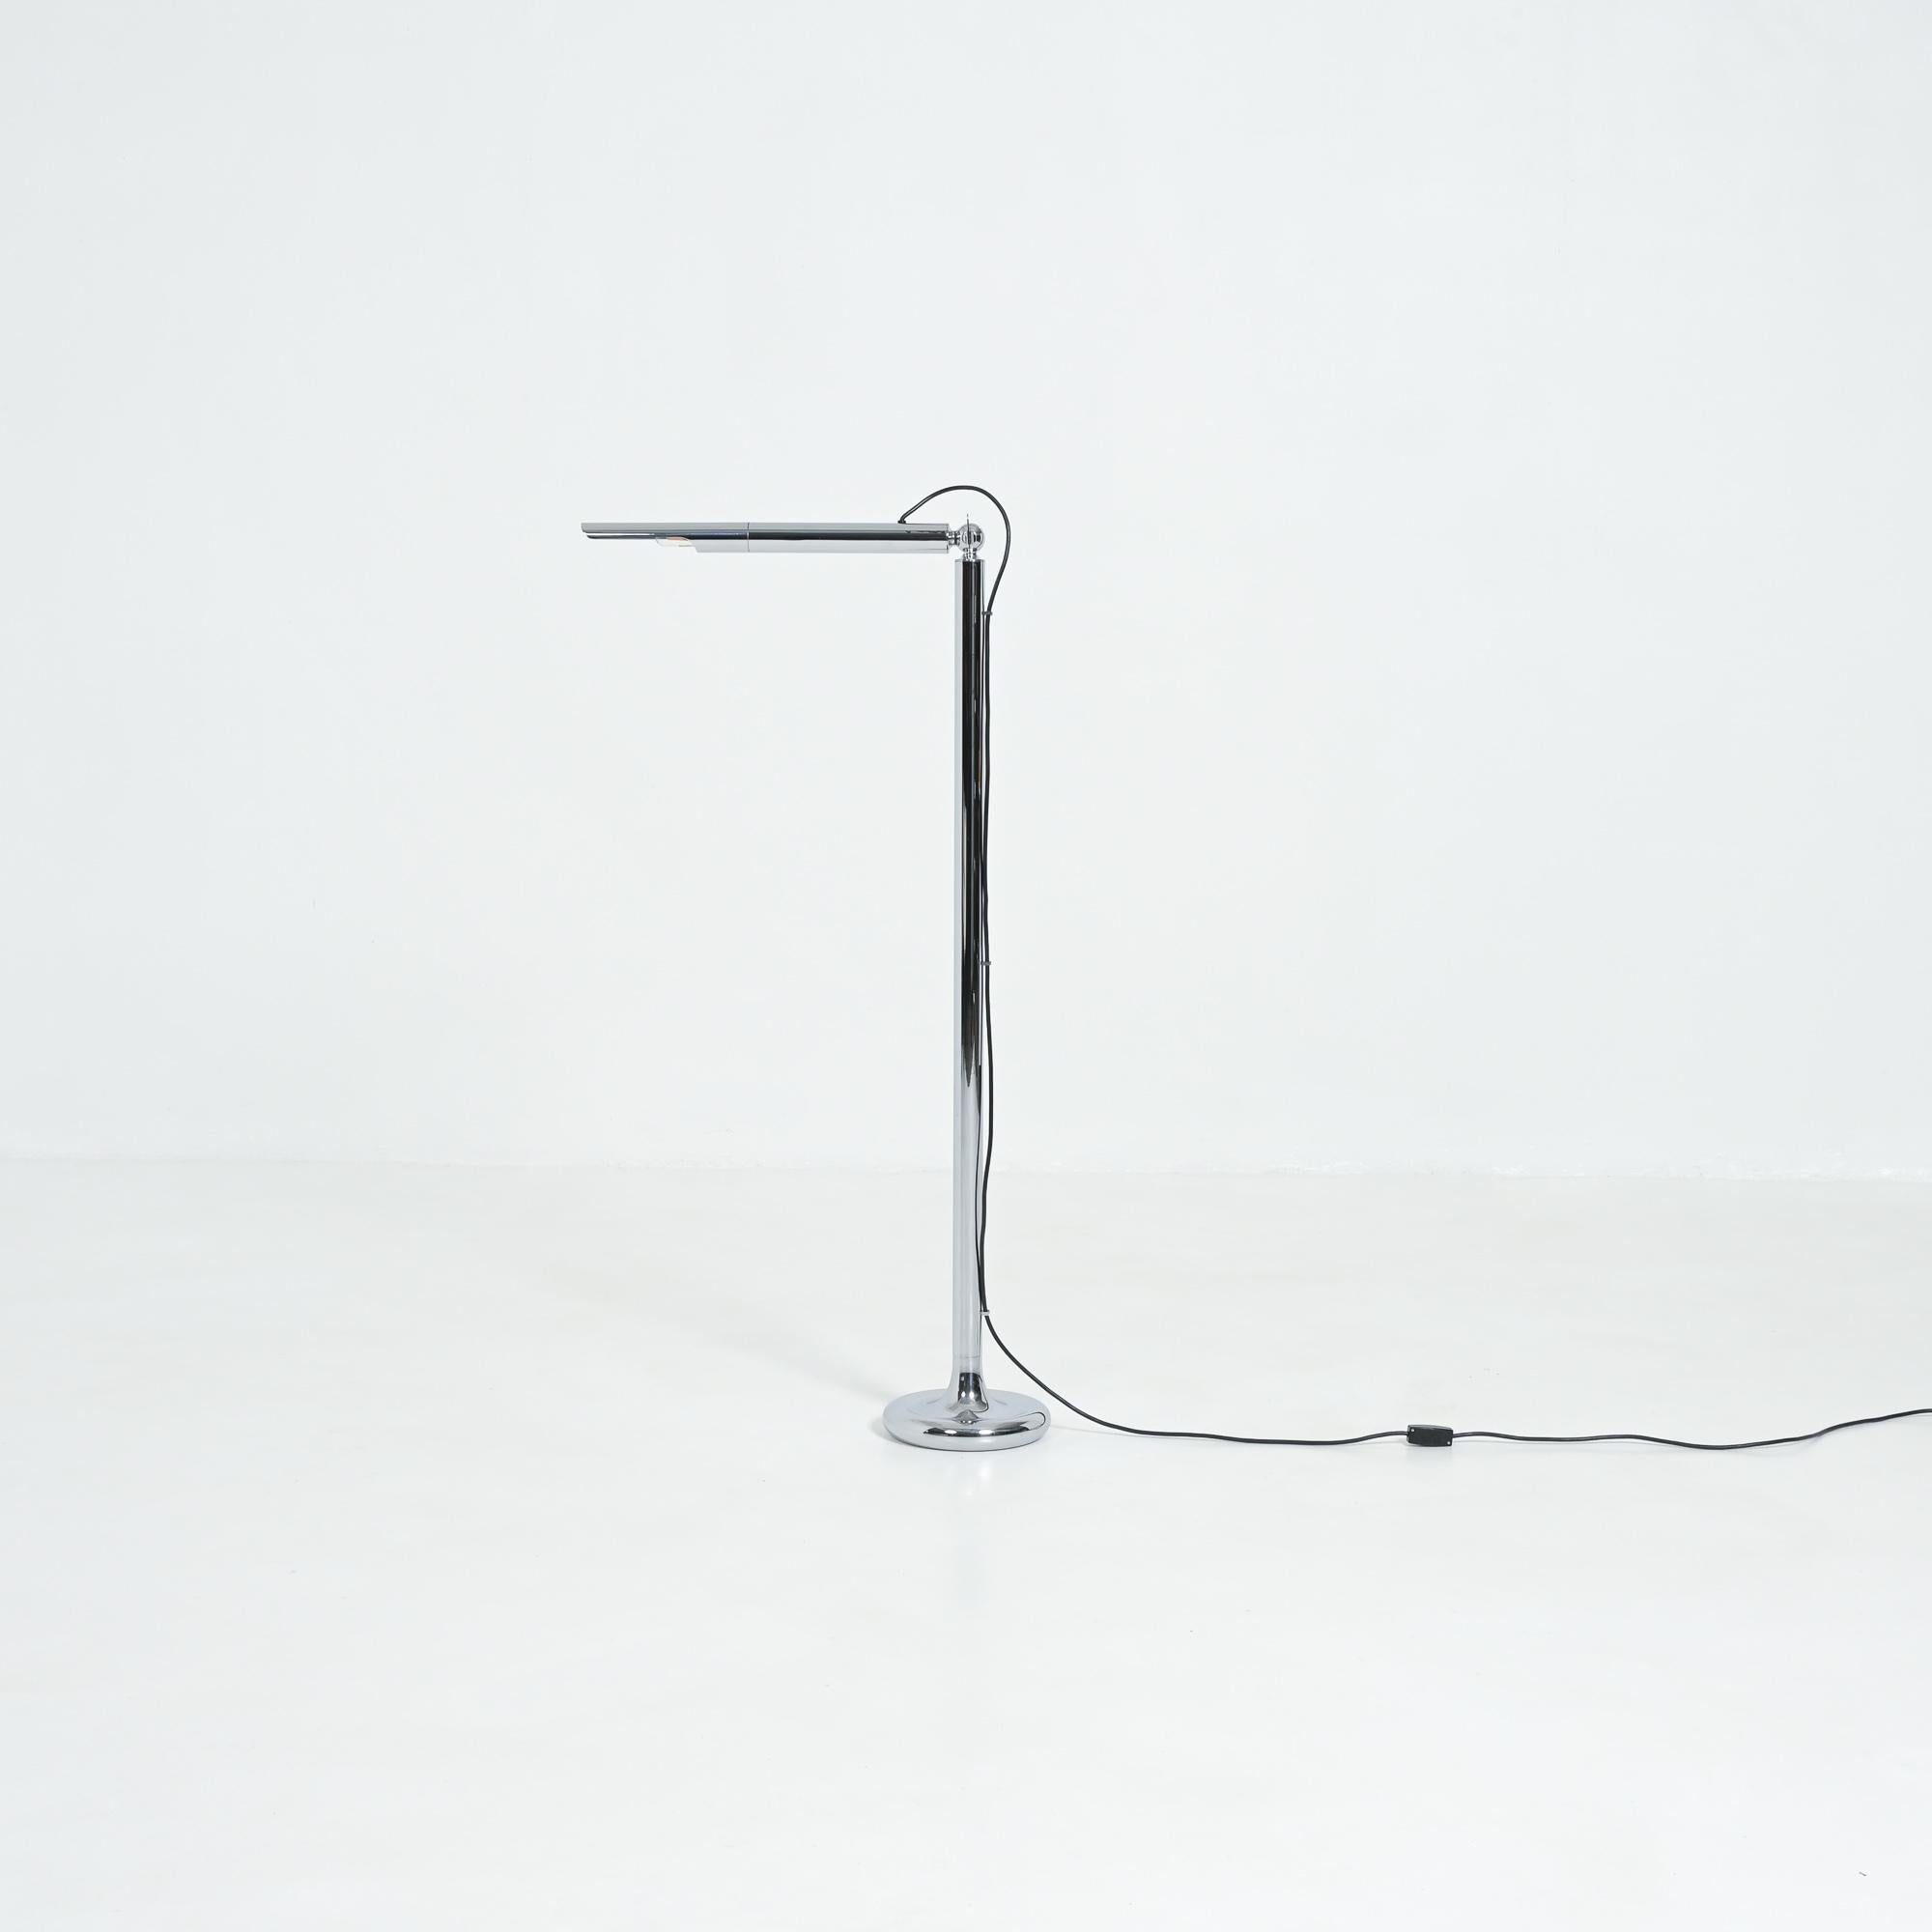 Die Stehleuchte Light Pole wurde 1967 von Ingo Maurer für Design M entworfen.
Diese Leuchte ist Teil der ersten Kollektion, die Ingo Maurer für sein eigenes Unternehmen Design M entworfen hat.
Der Sockel, die Achse und der Directional-Reflektor